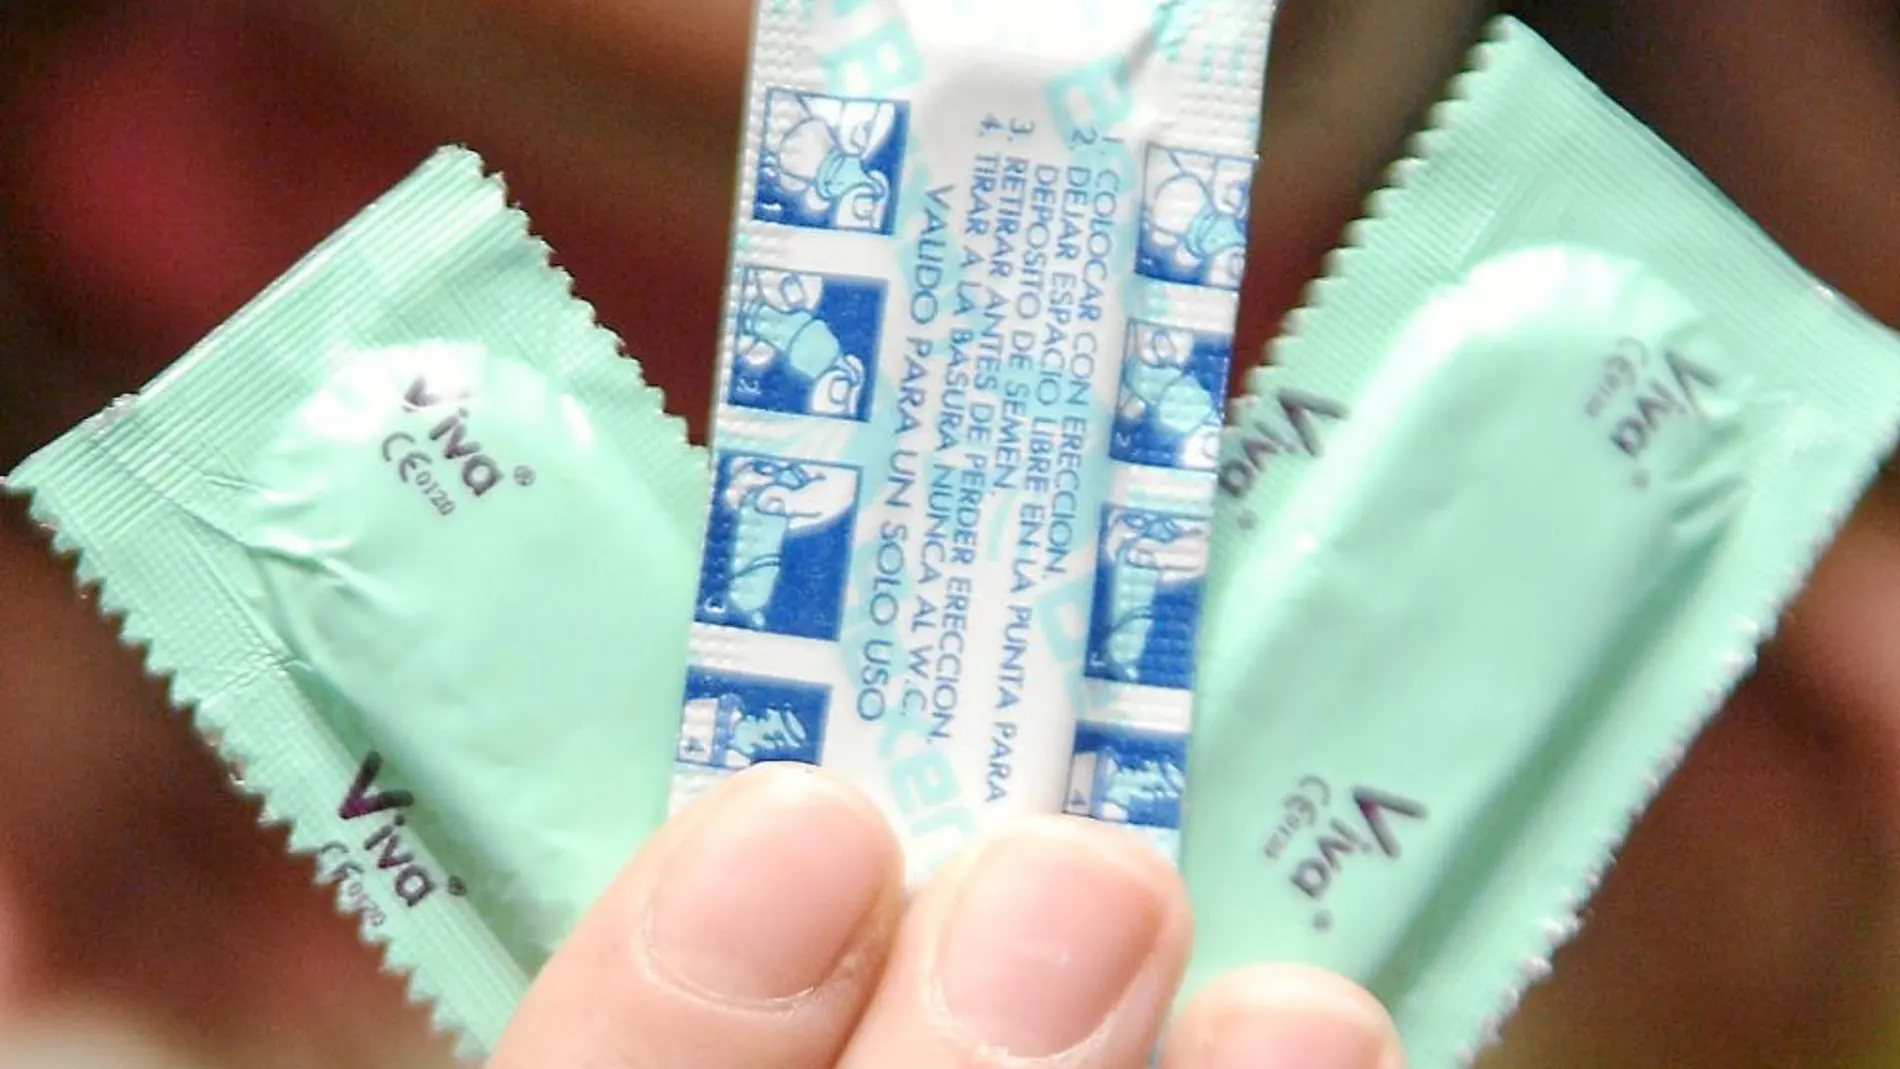 El preservativo sigue siendo el método anticonceptivo preferido, seguido a mucha distancia por la píldora